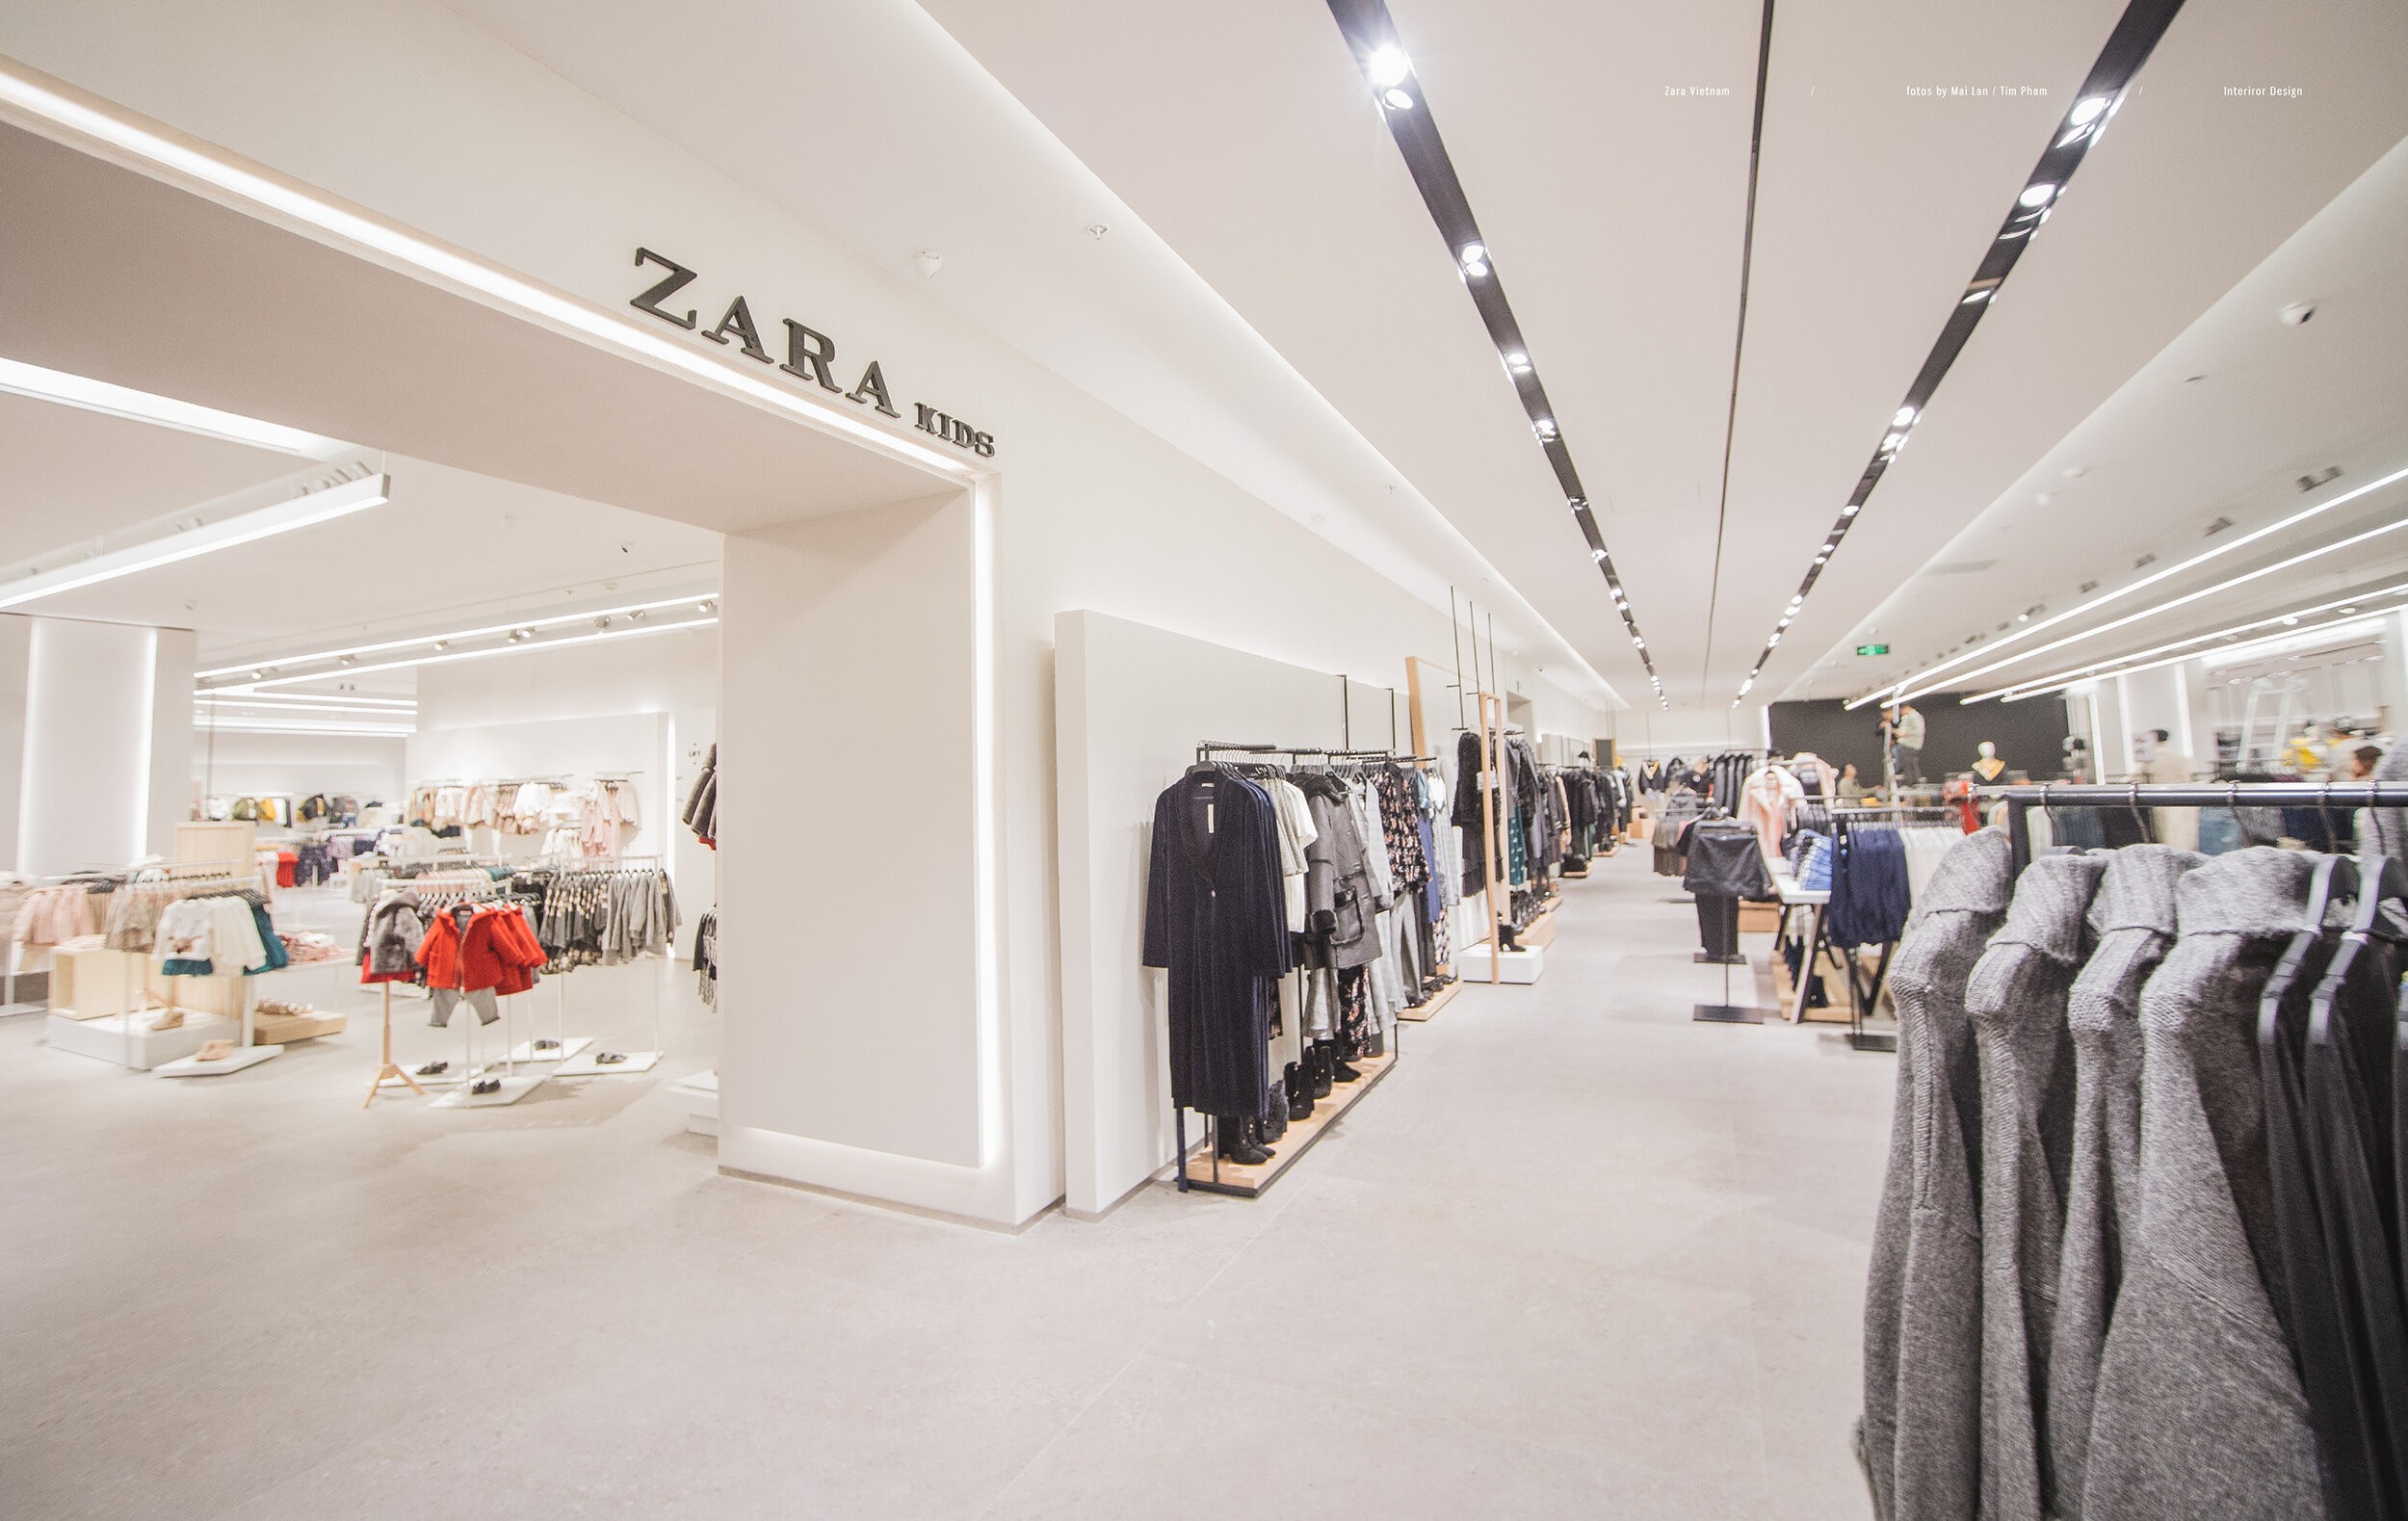 
Sự thành công hiện nay của Zara chính là sự phụ thuộc vào yếu tố triết lý kinh doanh và cách vận hành trong chuỗi cung ứng đặc biệt của một tập đoàn nào đó.
